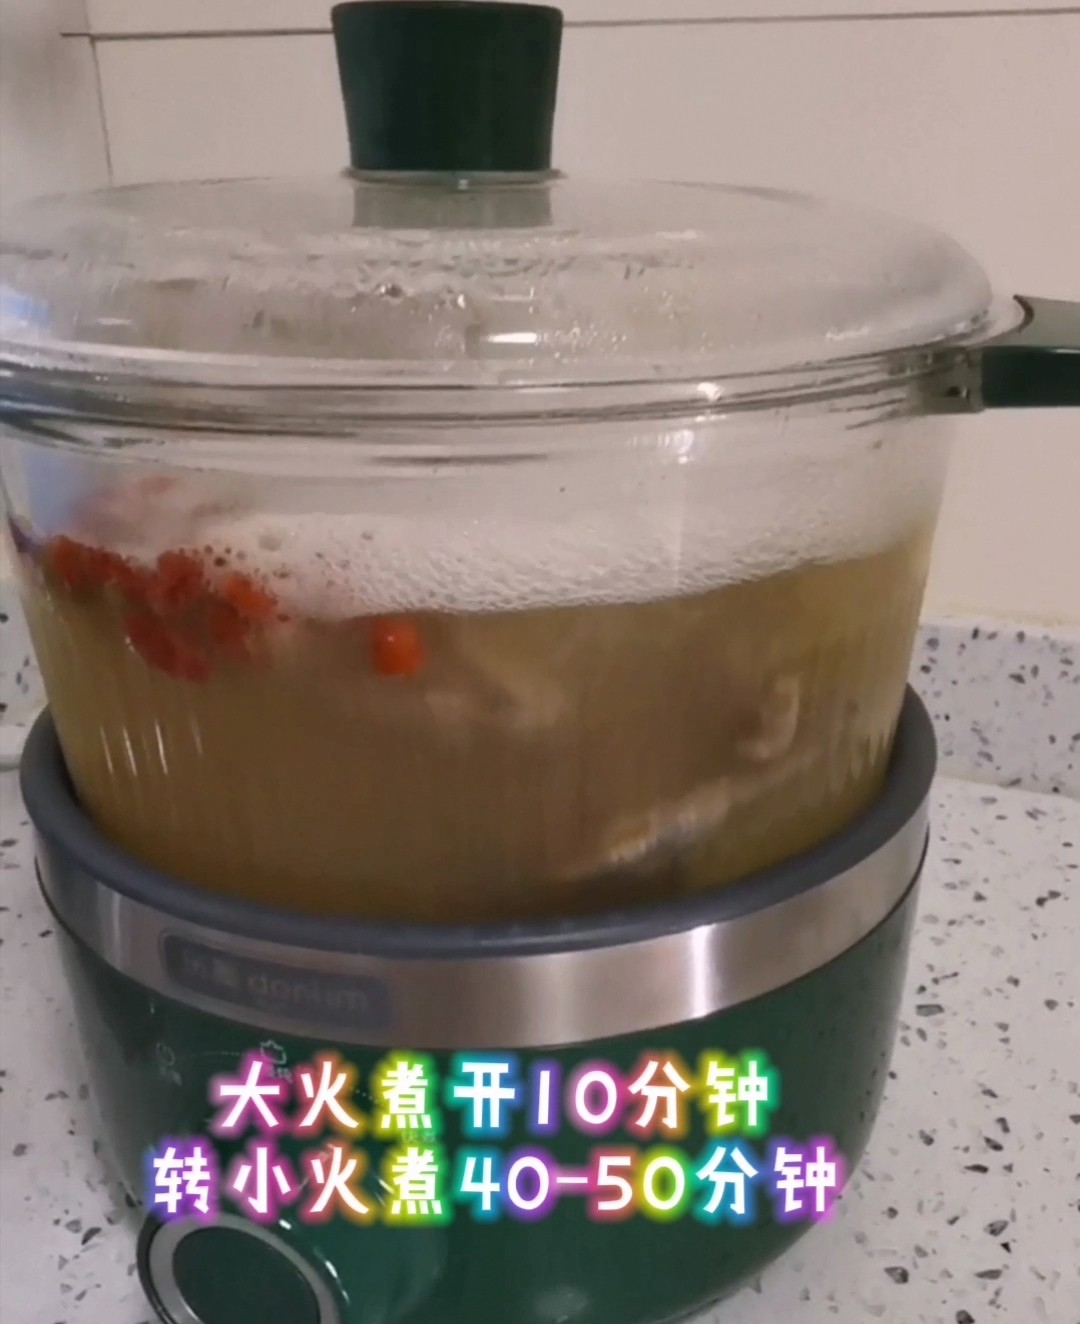 Yam Pigeon Soup recipe